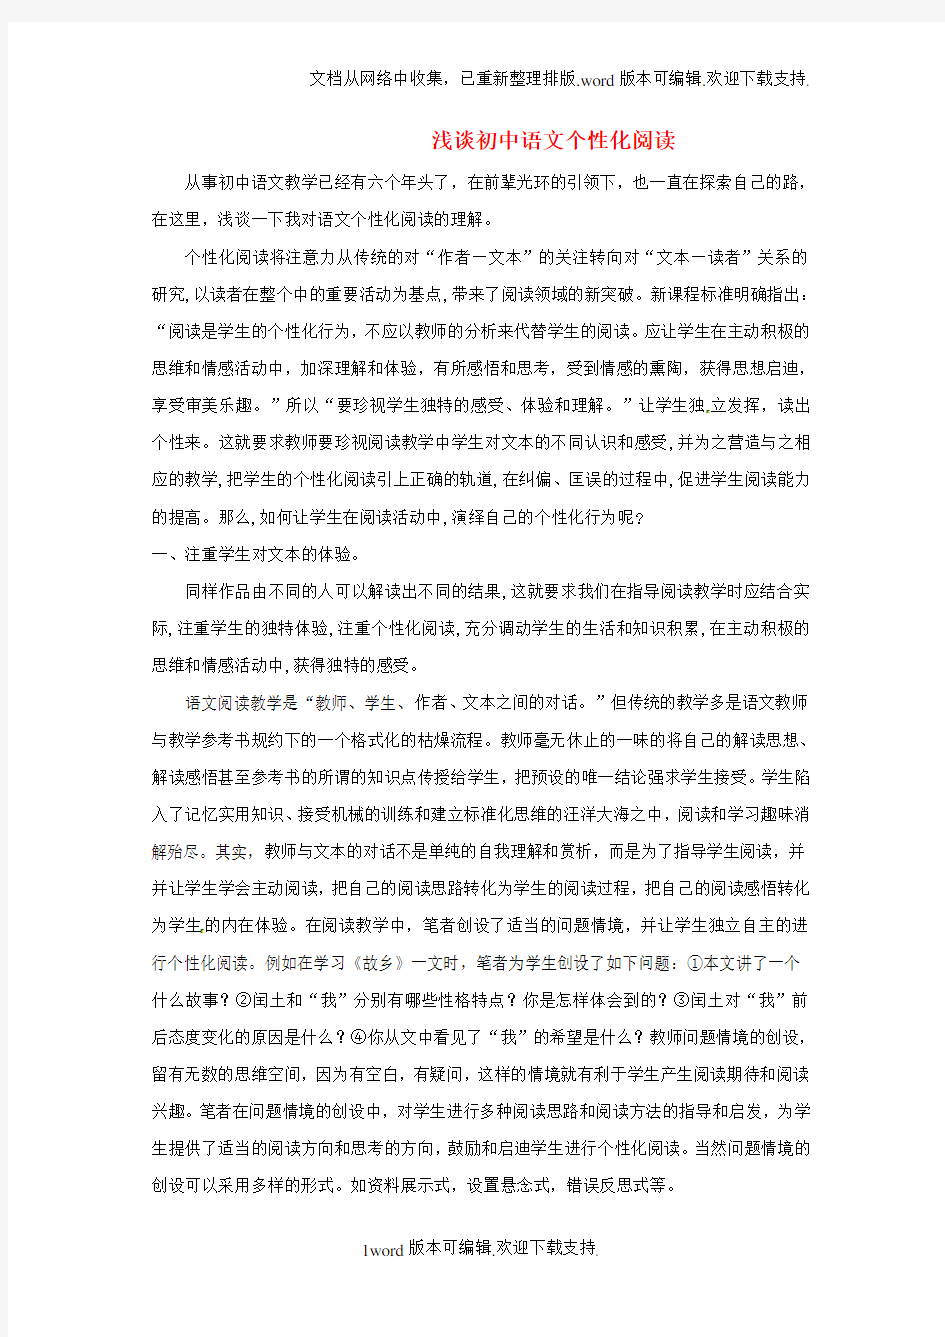 初中期刊浅谈初中语文个性化阅读